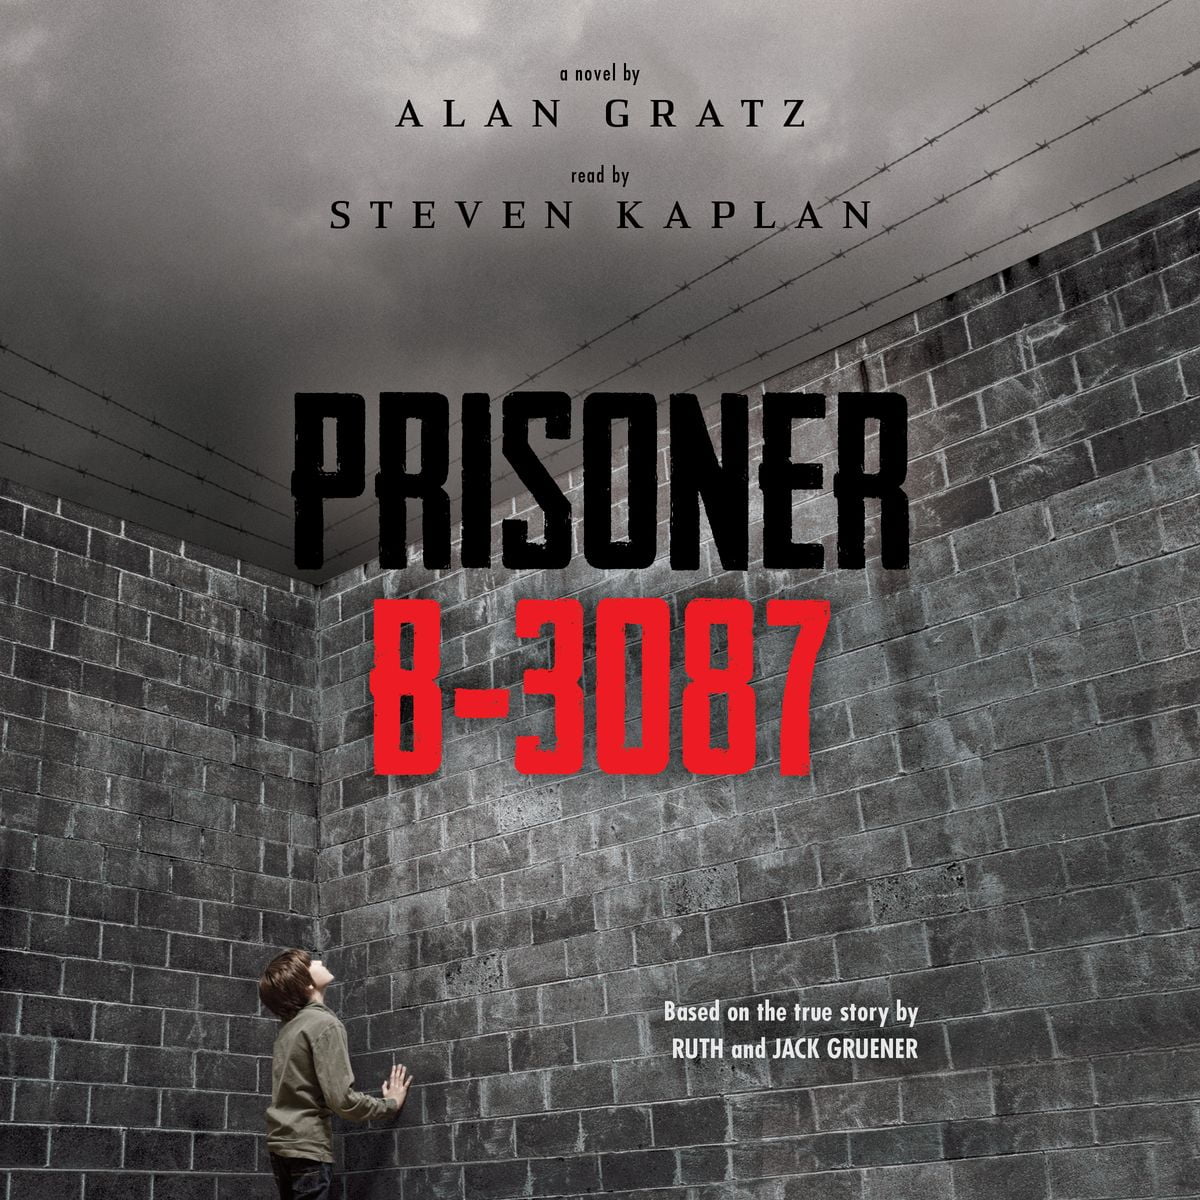 book review of prisoner b 3087